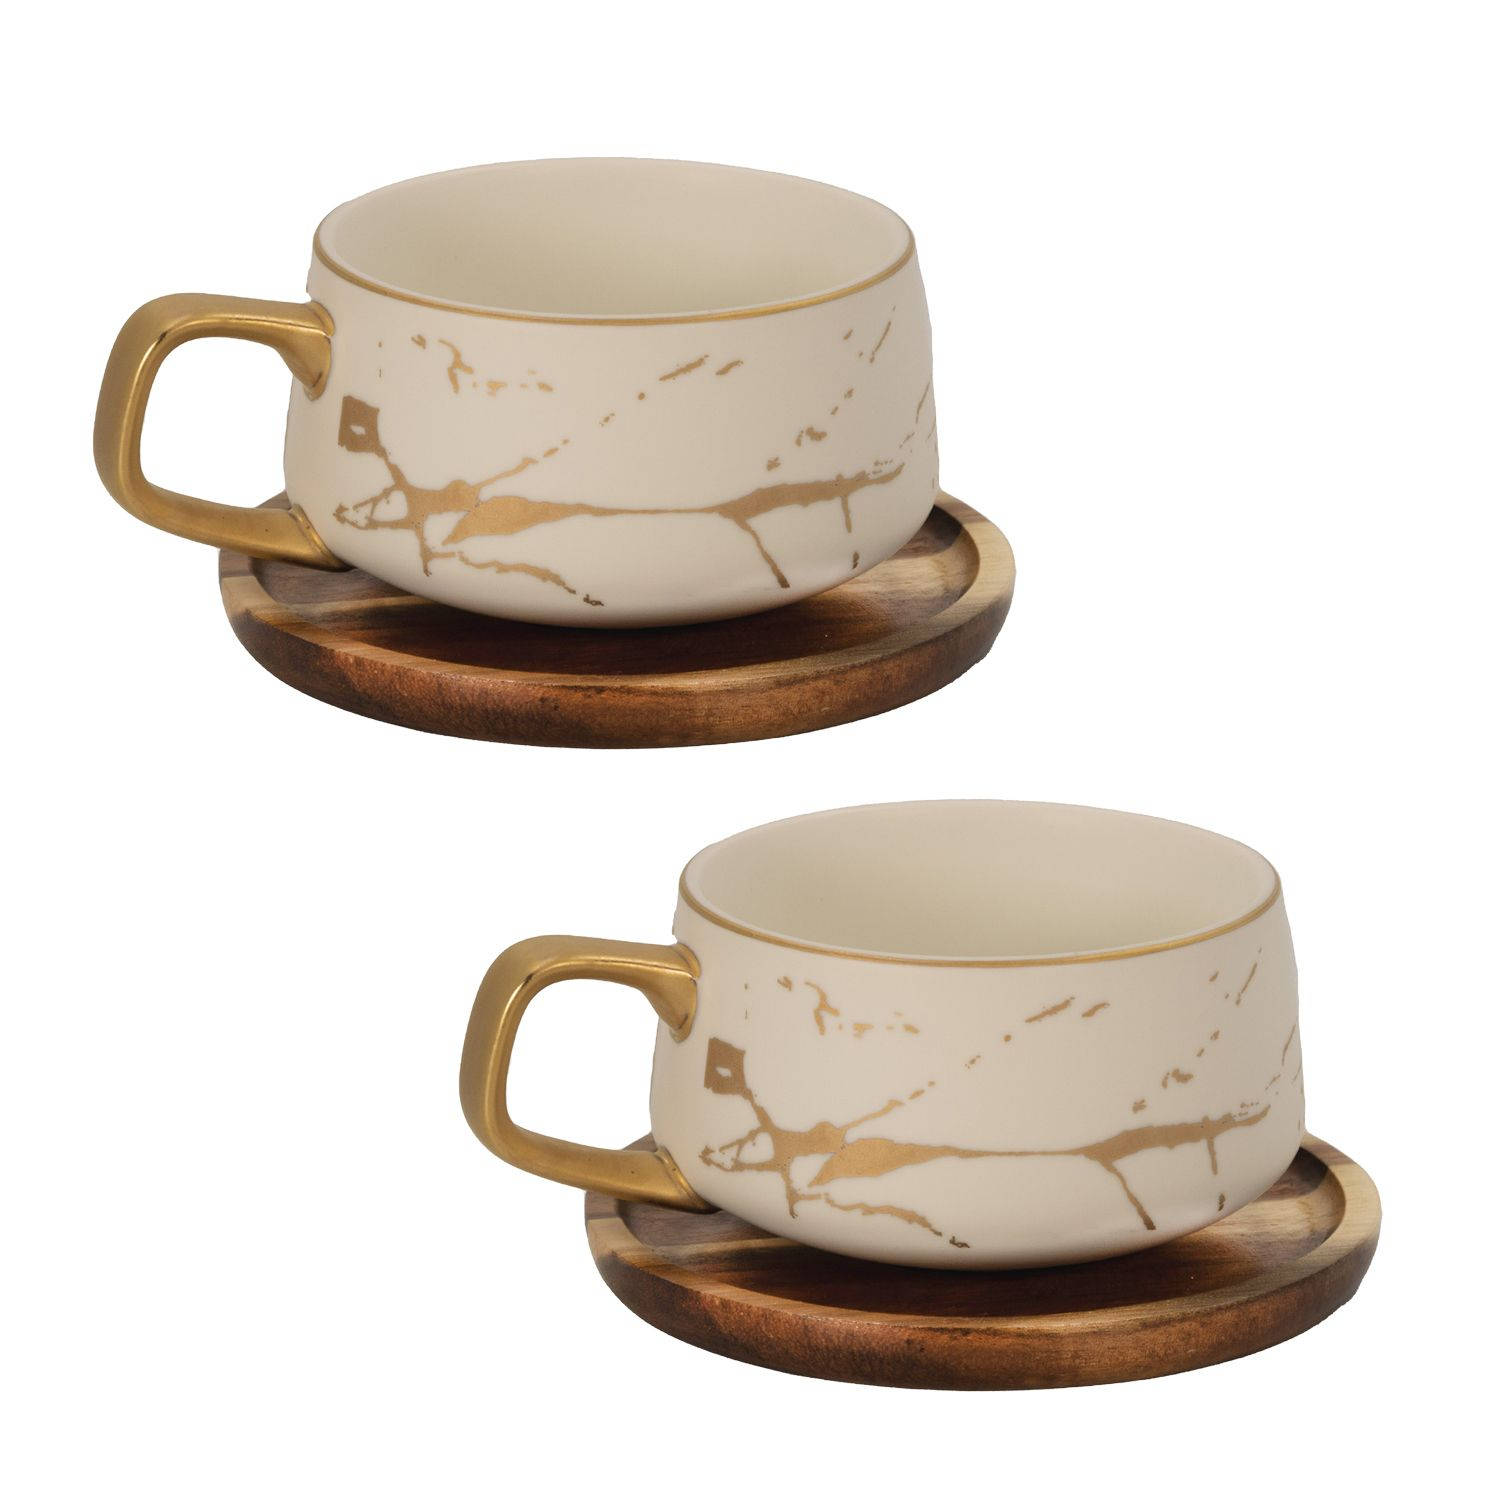 Intirilife 2x kop keramiek met marmerdesign in wit - ongeveer 200 ml - koffiemok, theemok met houten onderzetter kopje